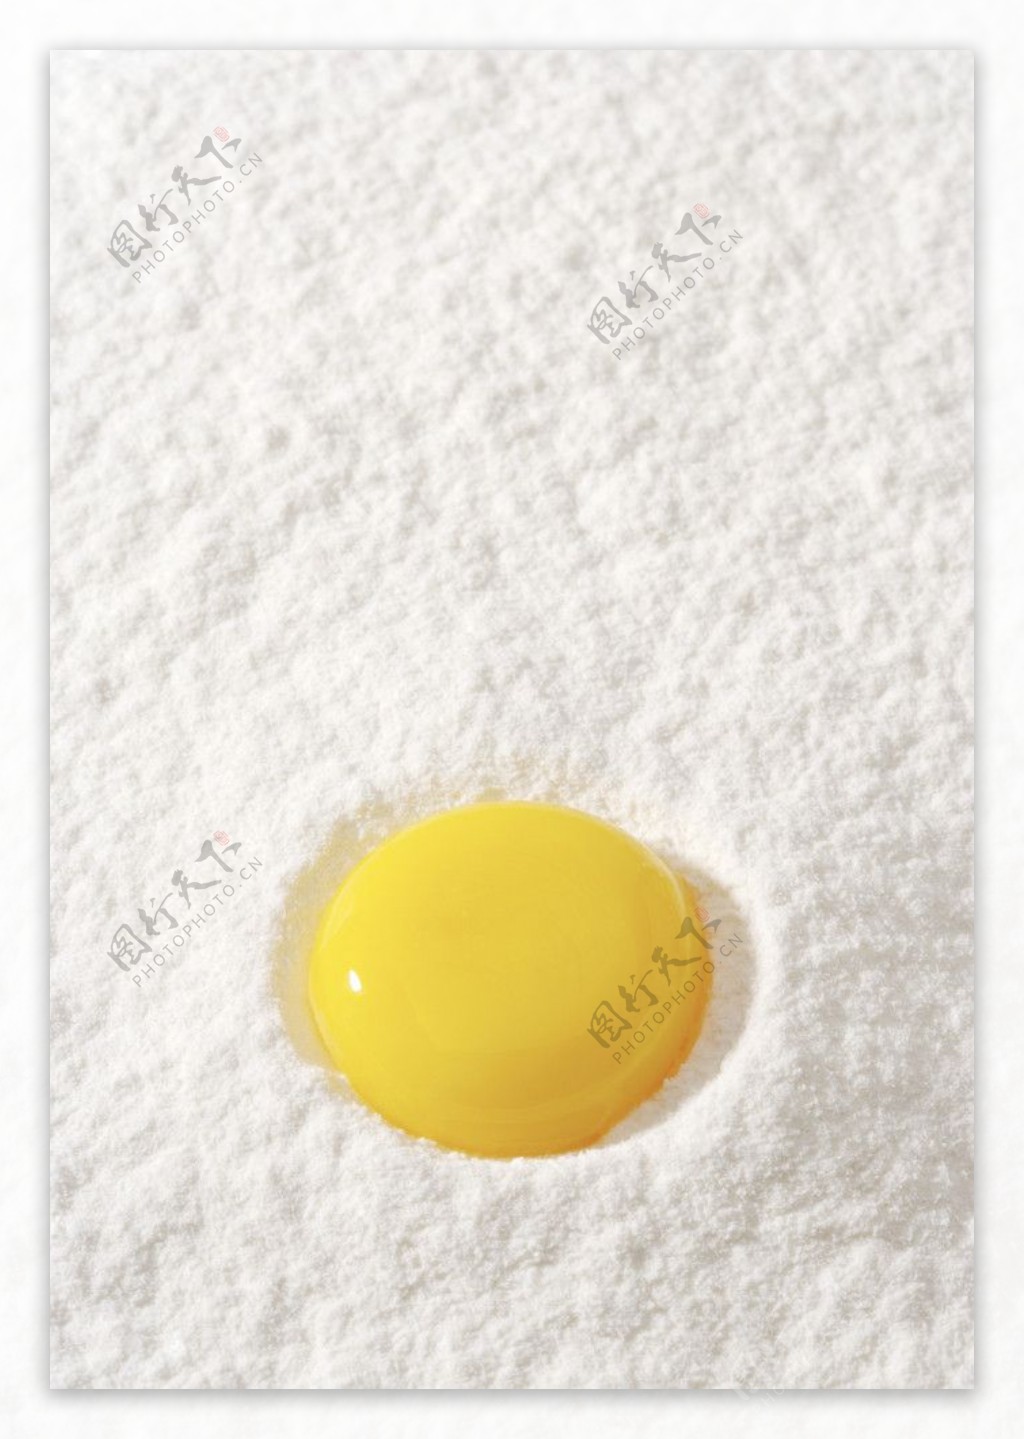 鸡蛋黄图片